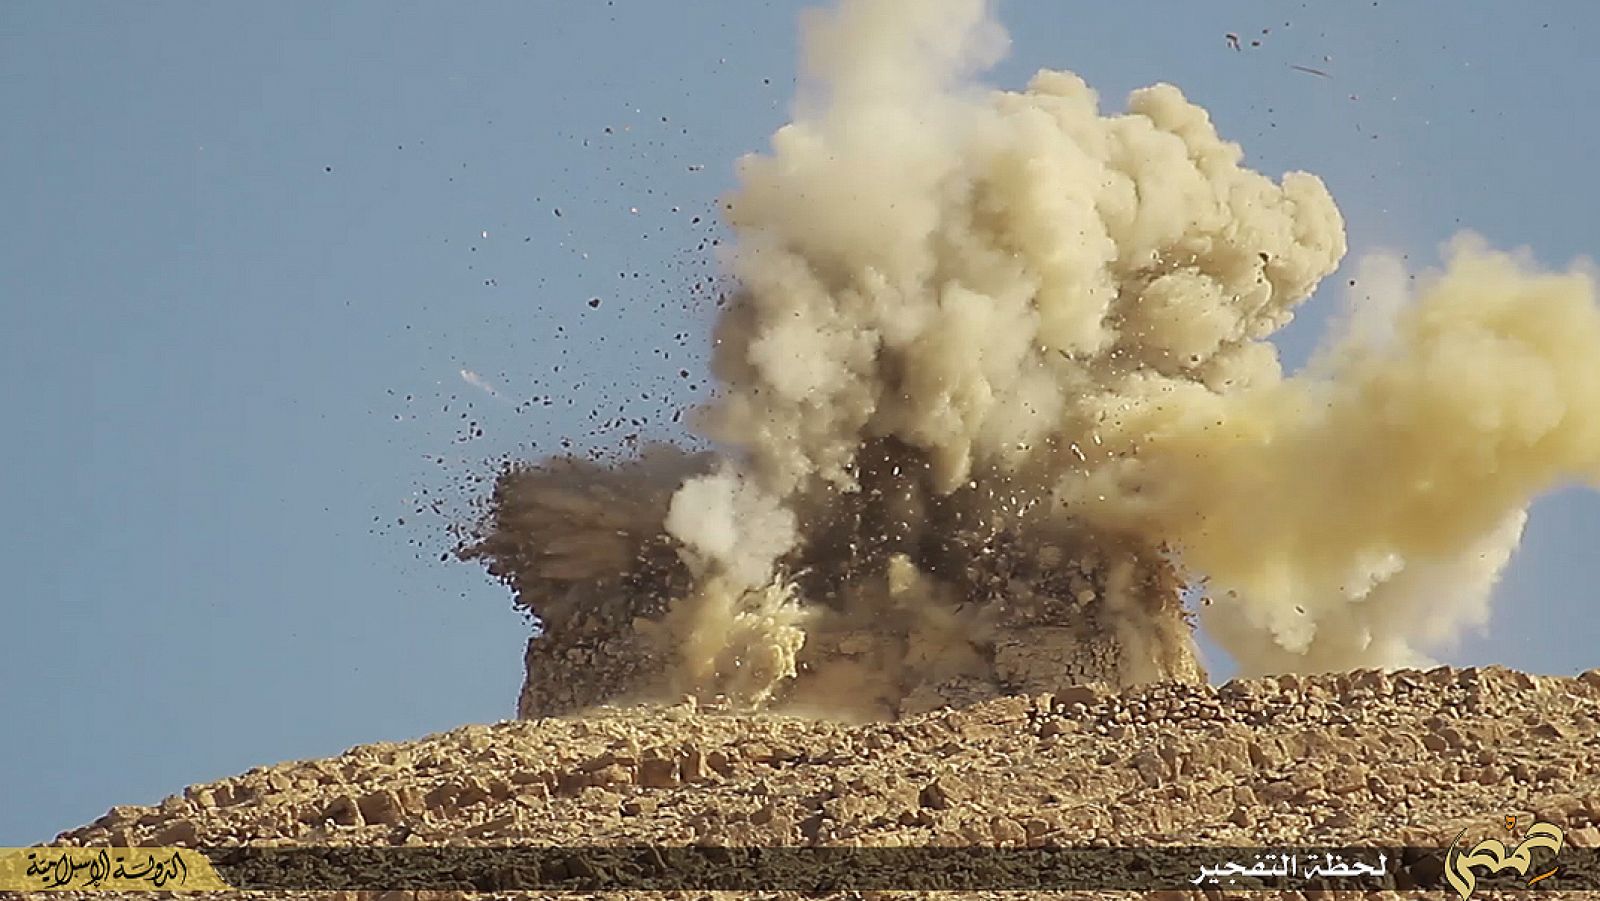 Imagen que supuestamente muestra la destrucción de un santuario en la ciudad de Palmira, en Siria, por parte del Estado Islámico